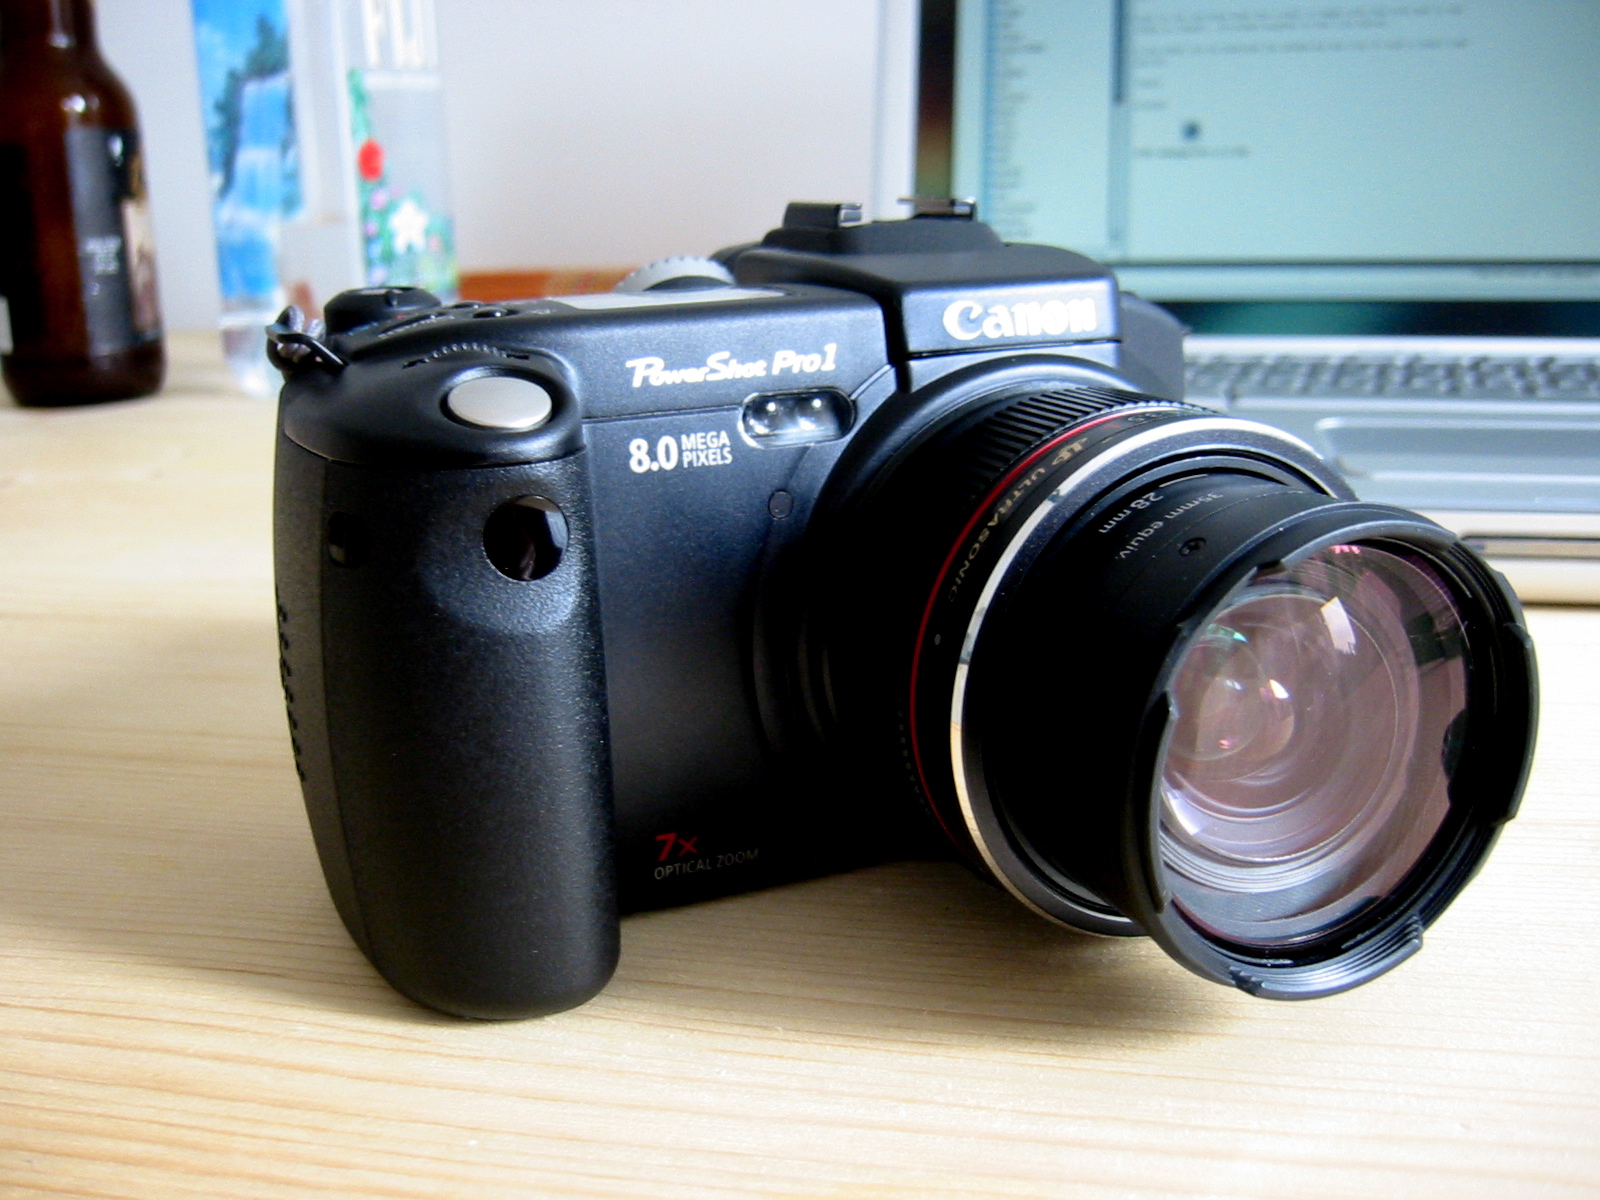 Canon PowerShot Pro1 - Wikipedia